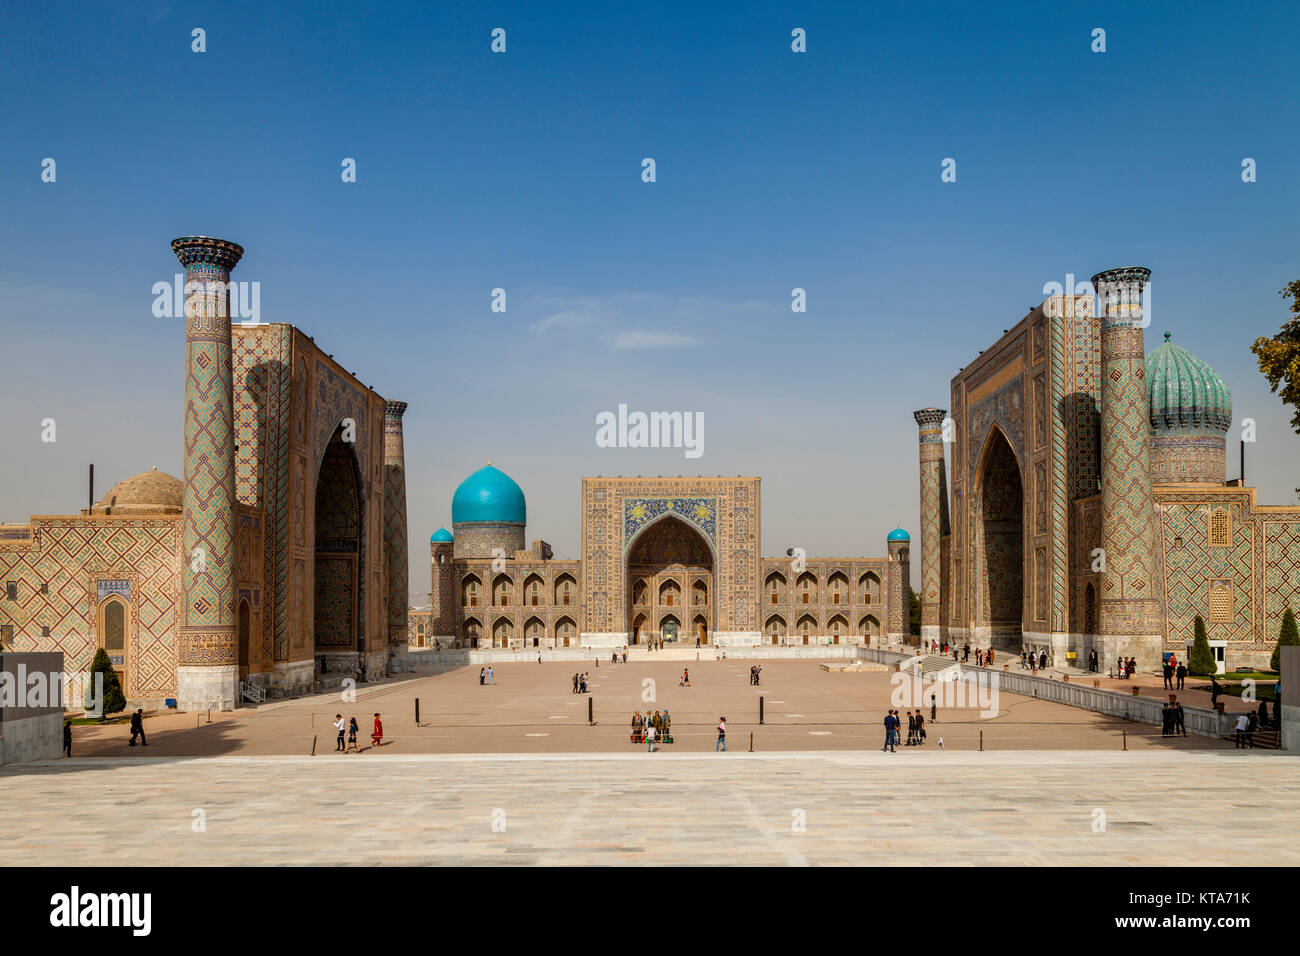 Der Registan, von der Aussichtsplattform, Samarkand, Usbekistan fotografiert. Stockfoto